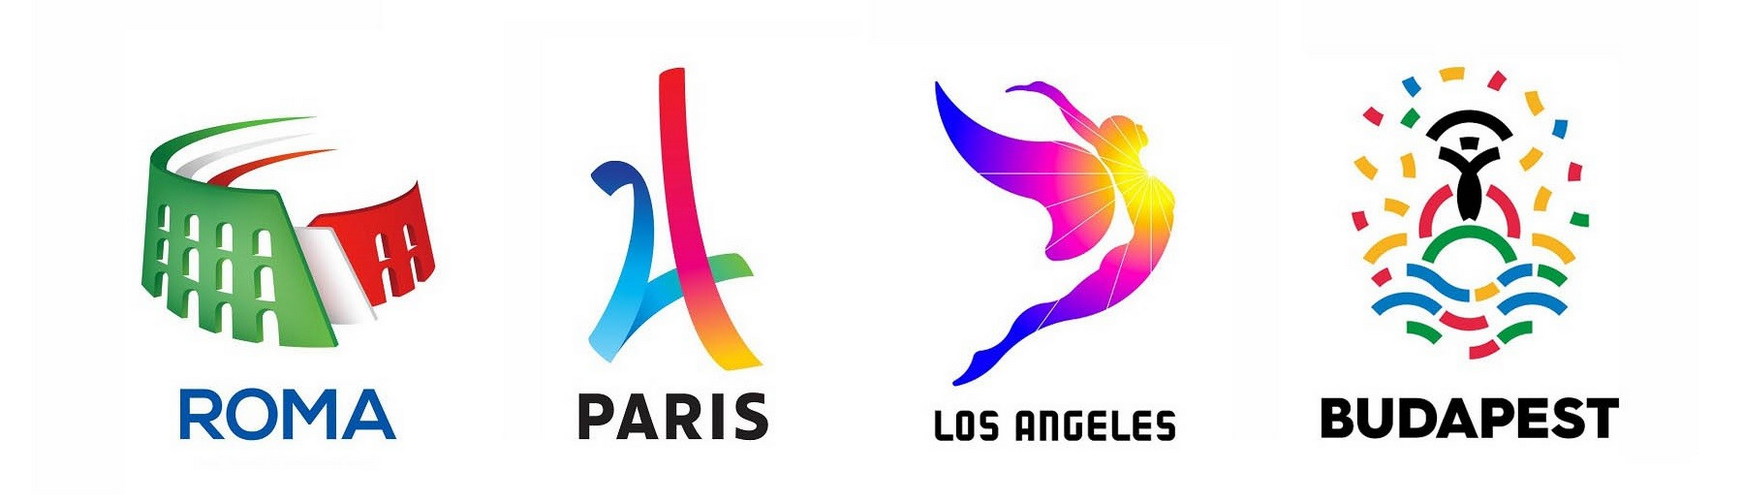 Логотипы игр Олимпиады и их айдентика: эмблемы и постеры - Фото №6